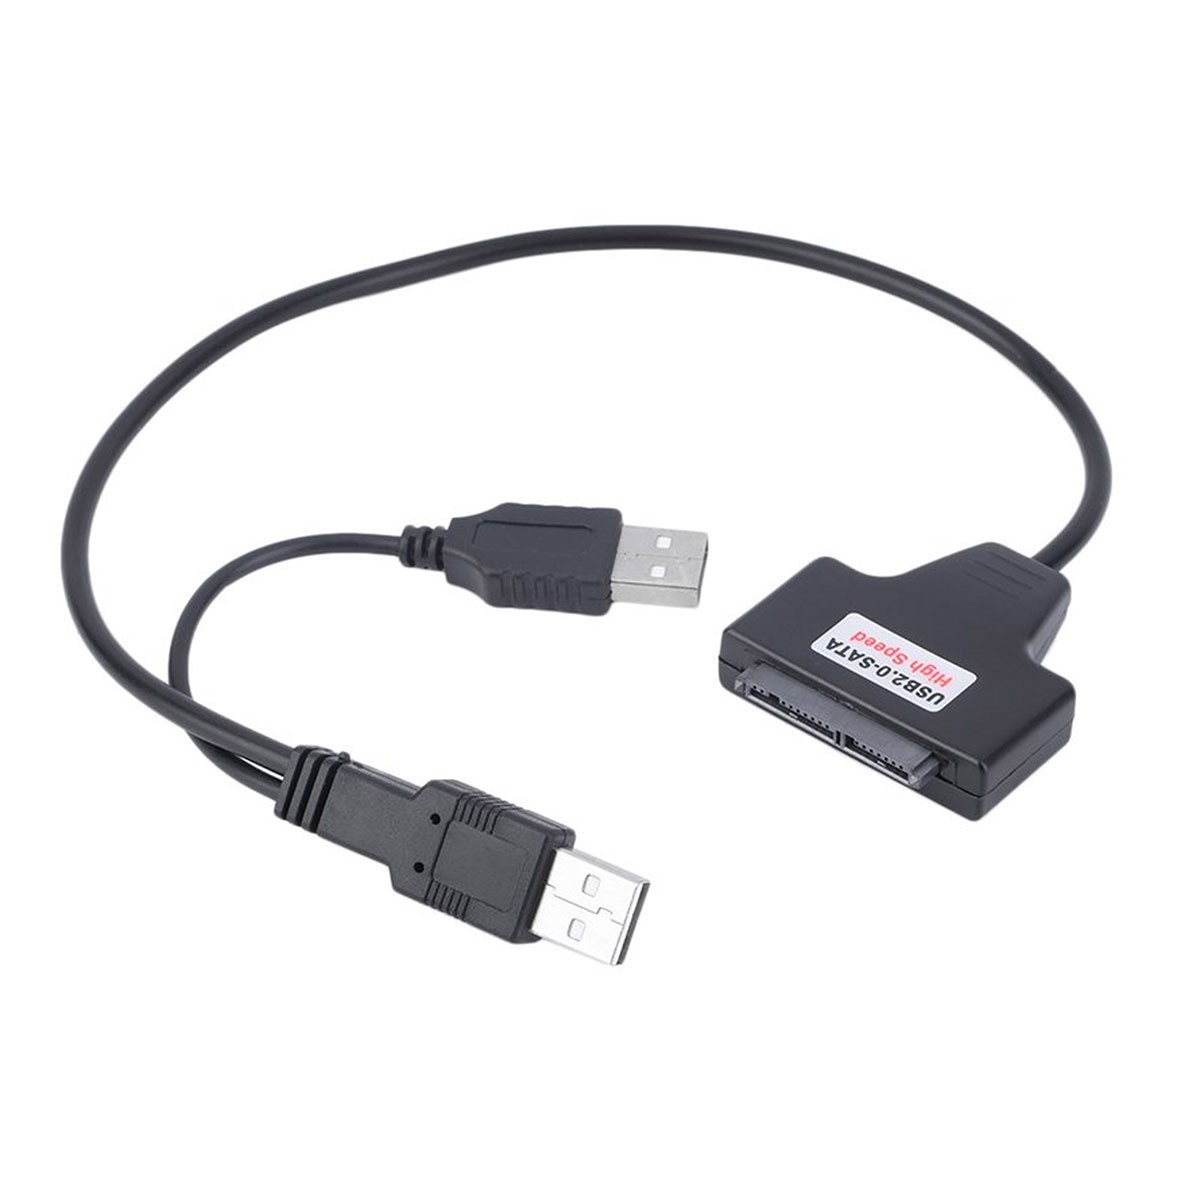 Адаптер, конвертер, переходник USB 2.0 для жестких дисков HDD 2.5" SATA, цвет черный.